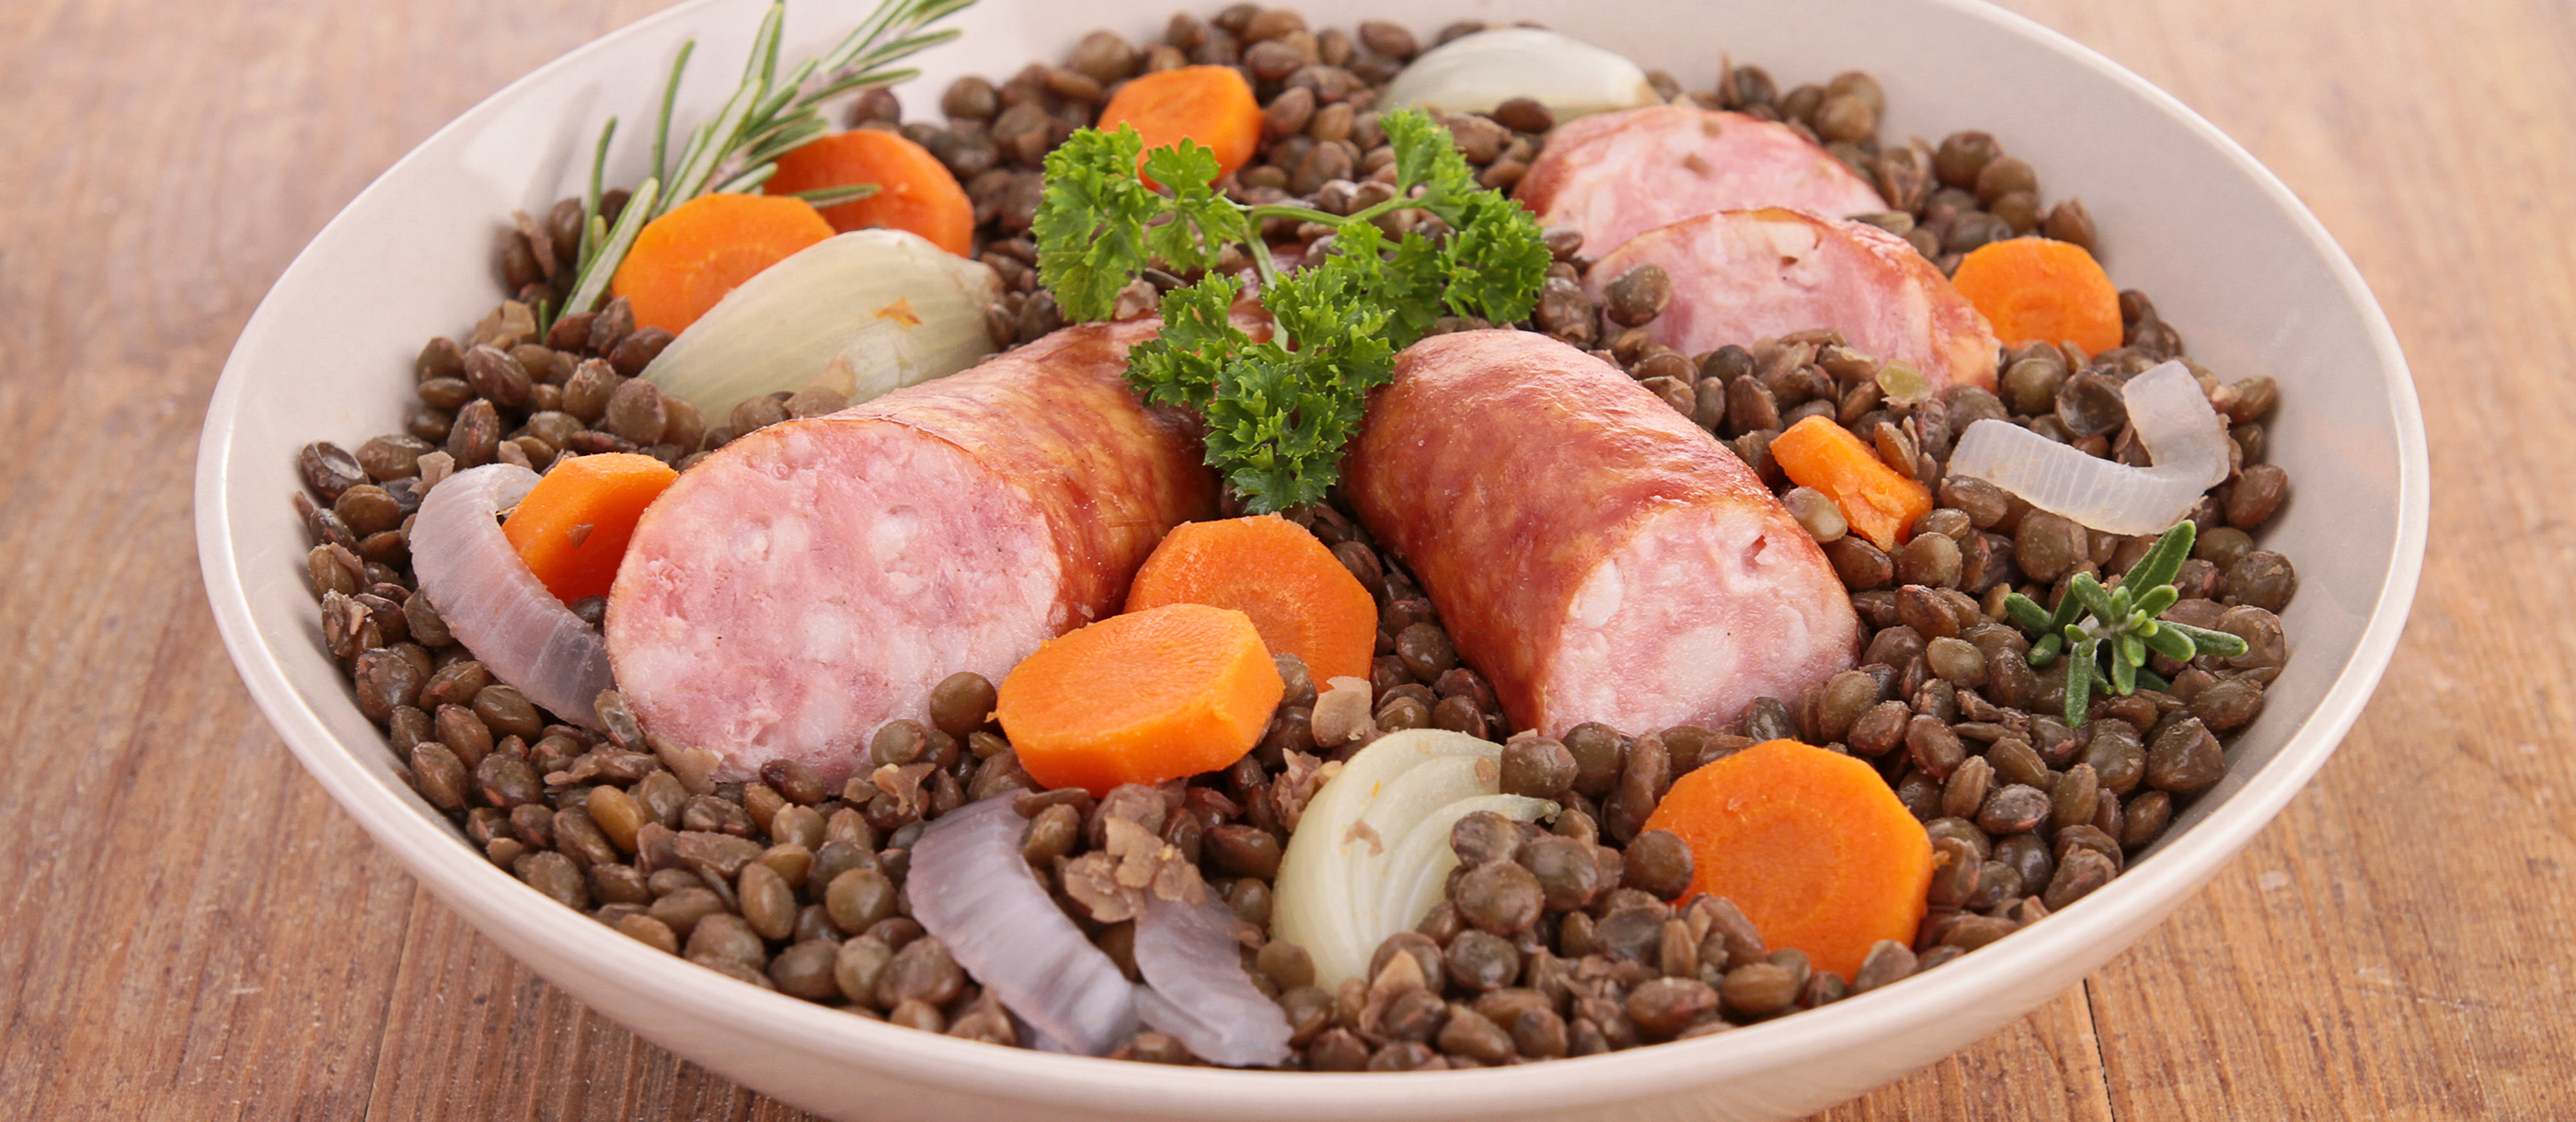 Salt Pork with Puy Lentils (Petit Sale aux Lentilles) - Cook Eat World